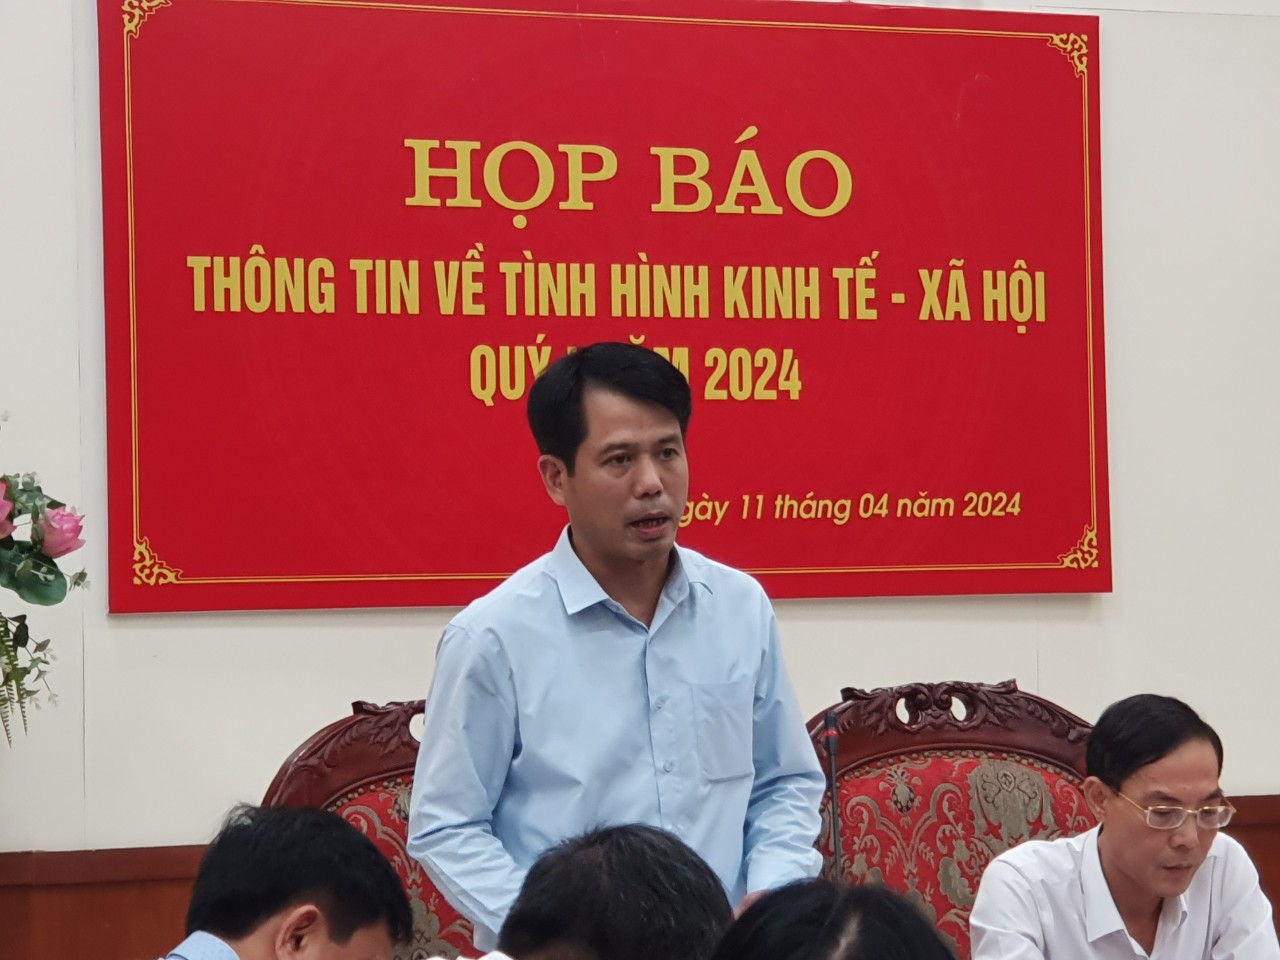 Đồng chí Đào Xuân Yên, Ủy viên Ban Thường vụ, Trưởng Ban Tuyên giáo Tỉnh ủy phát biểu tại buổi họp báo